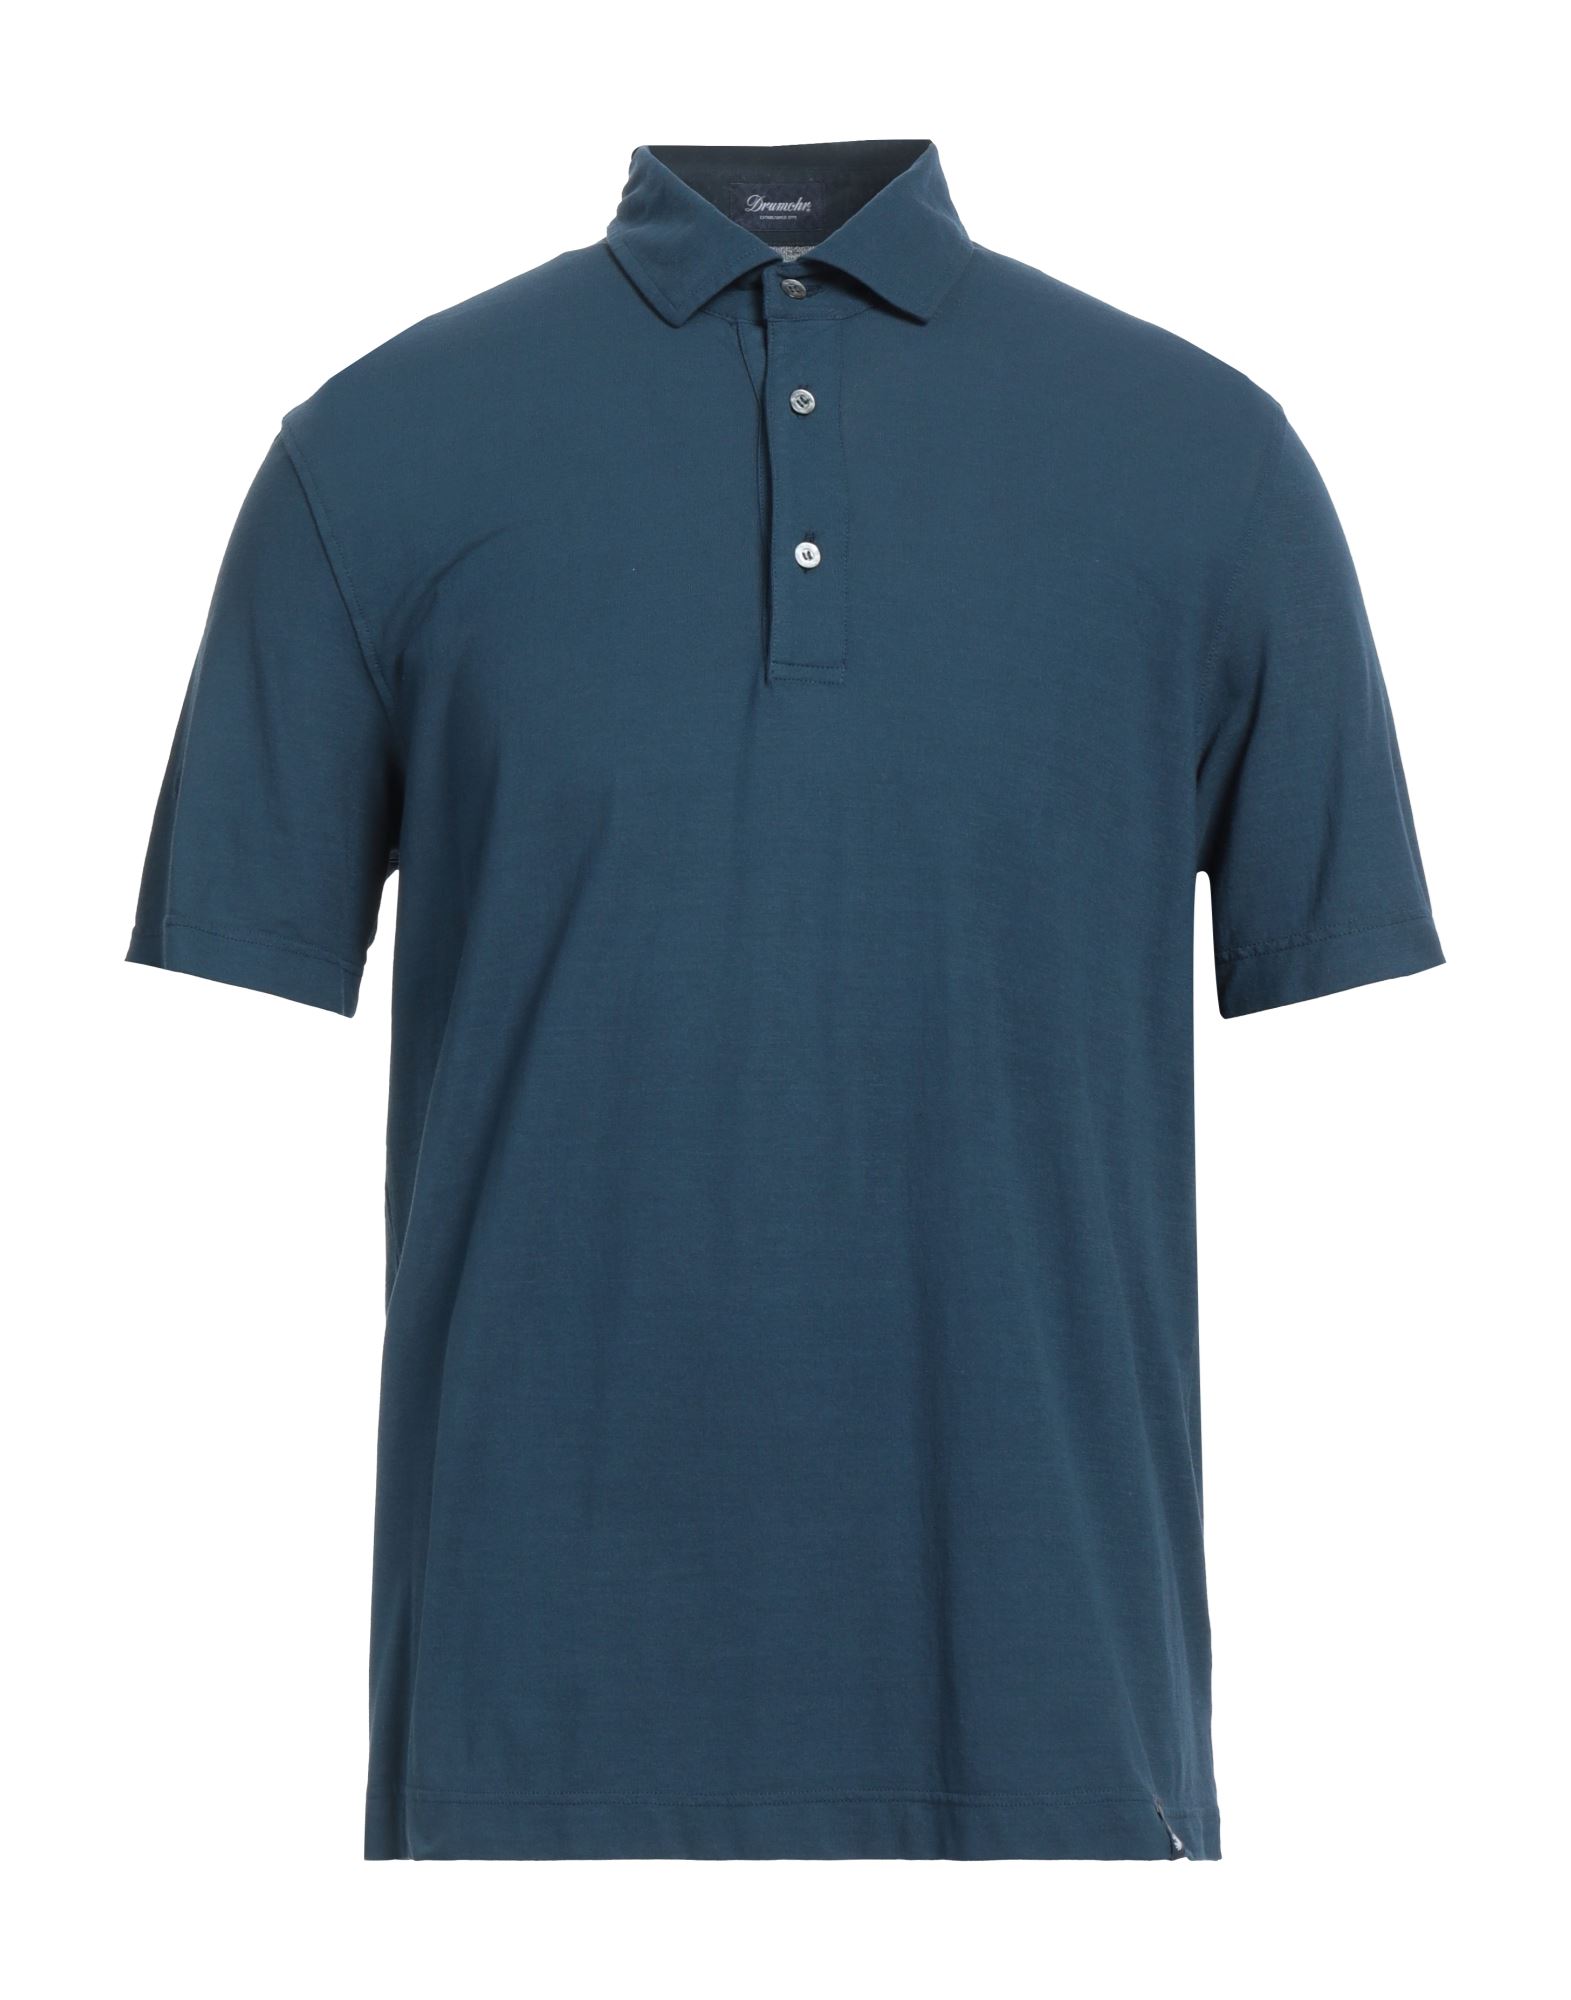 Drumohr Man Polo Shirt Navy Blue Size Xxl Cotton